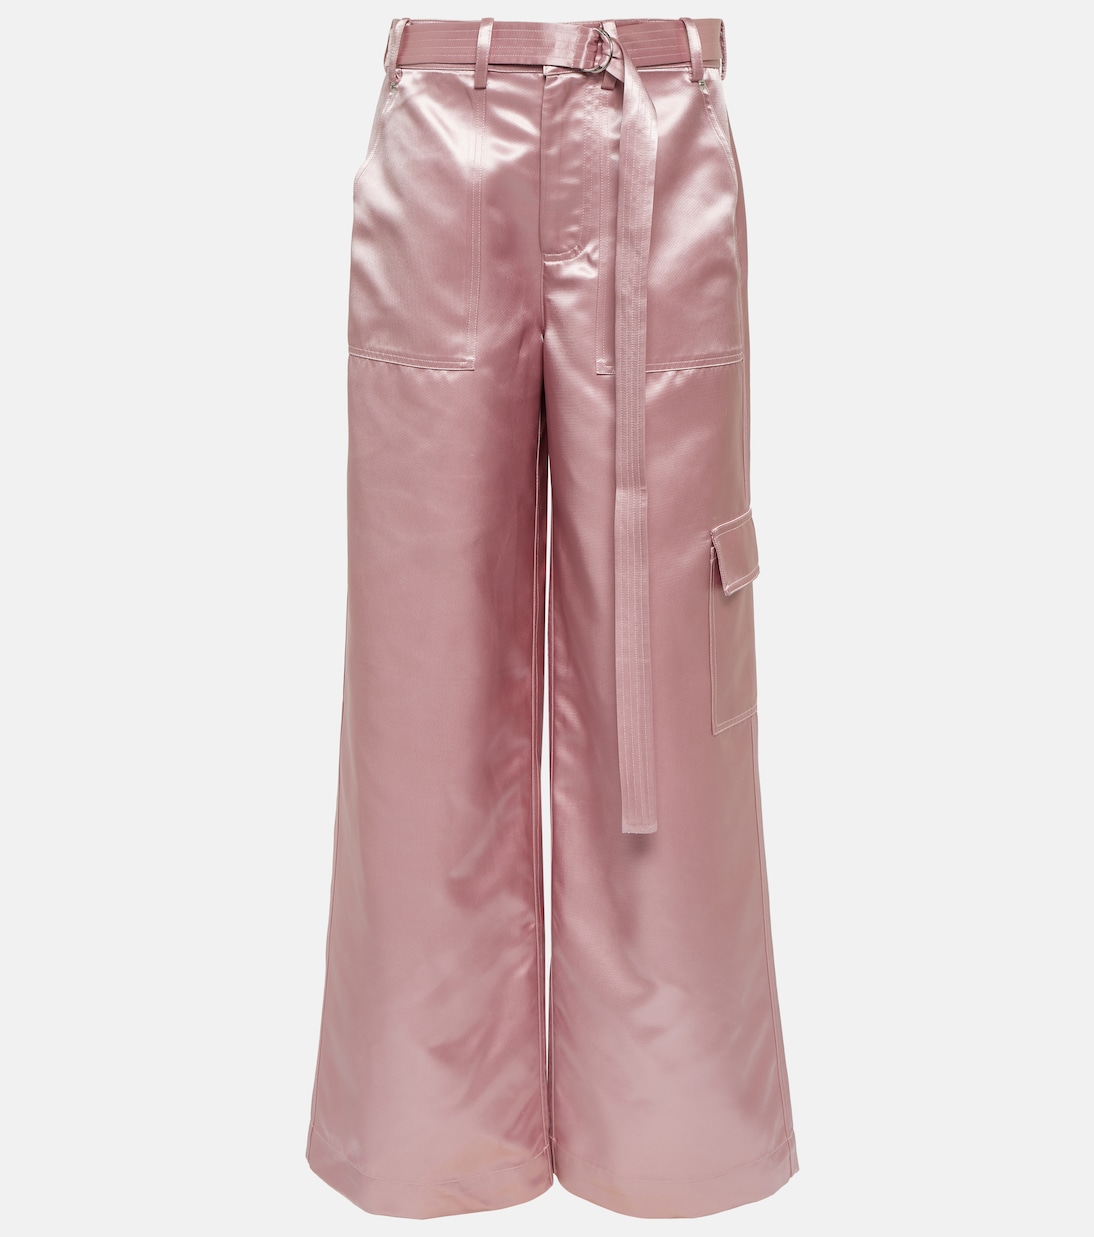 Широкие атласные брюки shay с высокой посадкой Staud, розовый атласные широкие брюки luke staud цвет garden moss